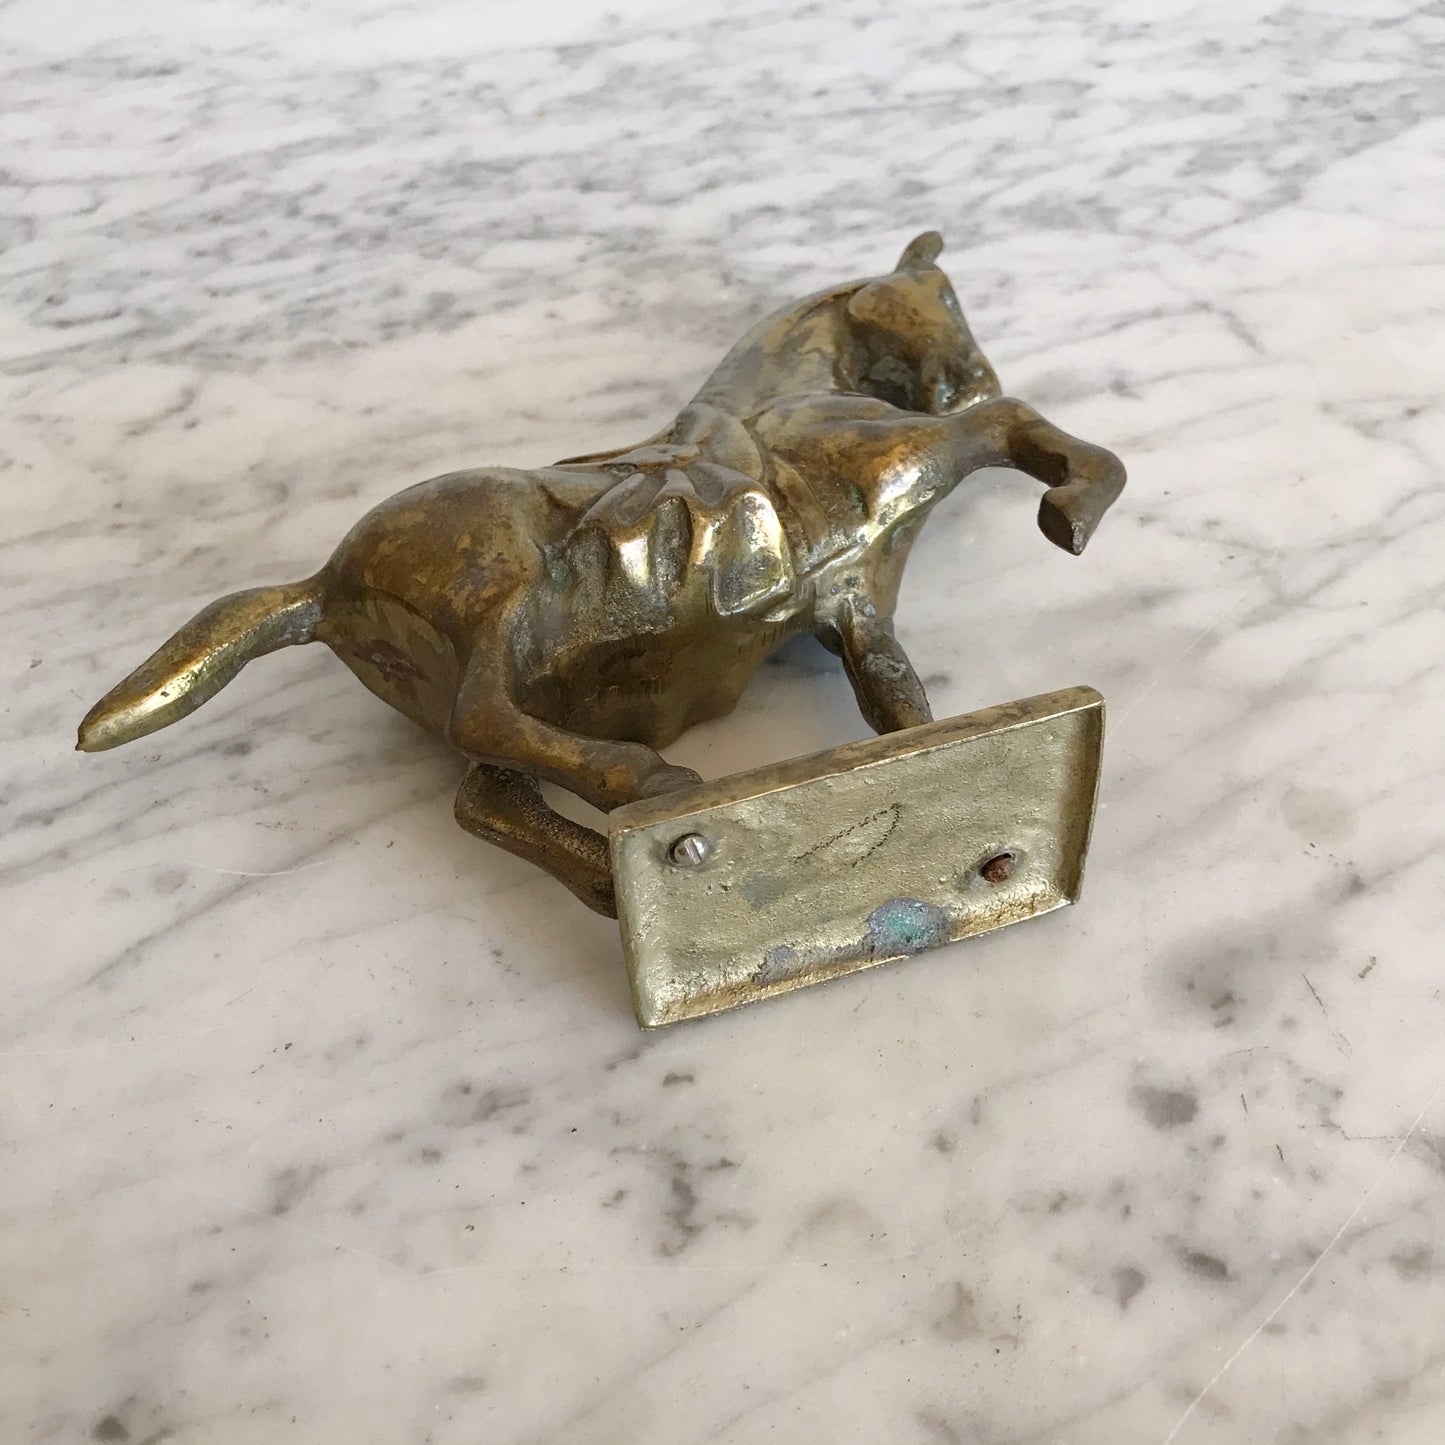 Vintage Brass Horse Sculpture